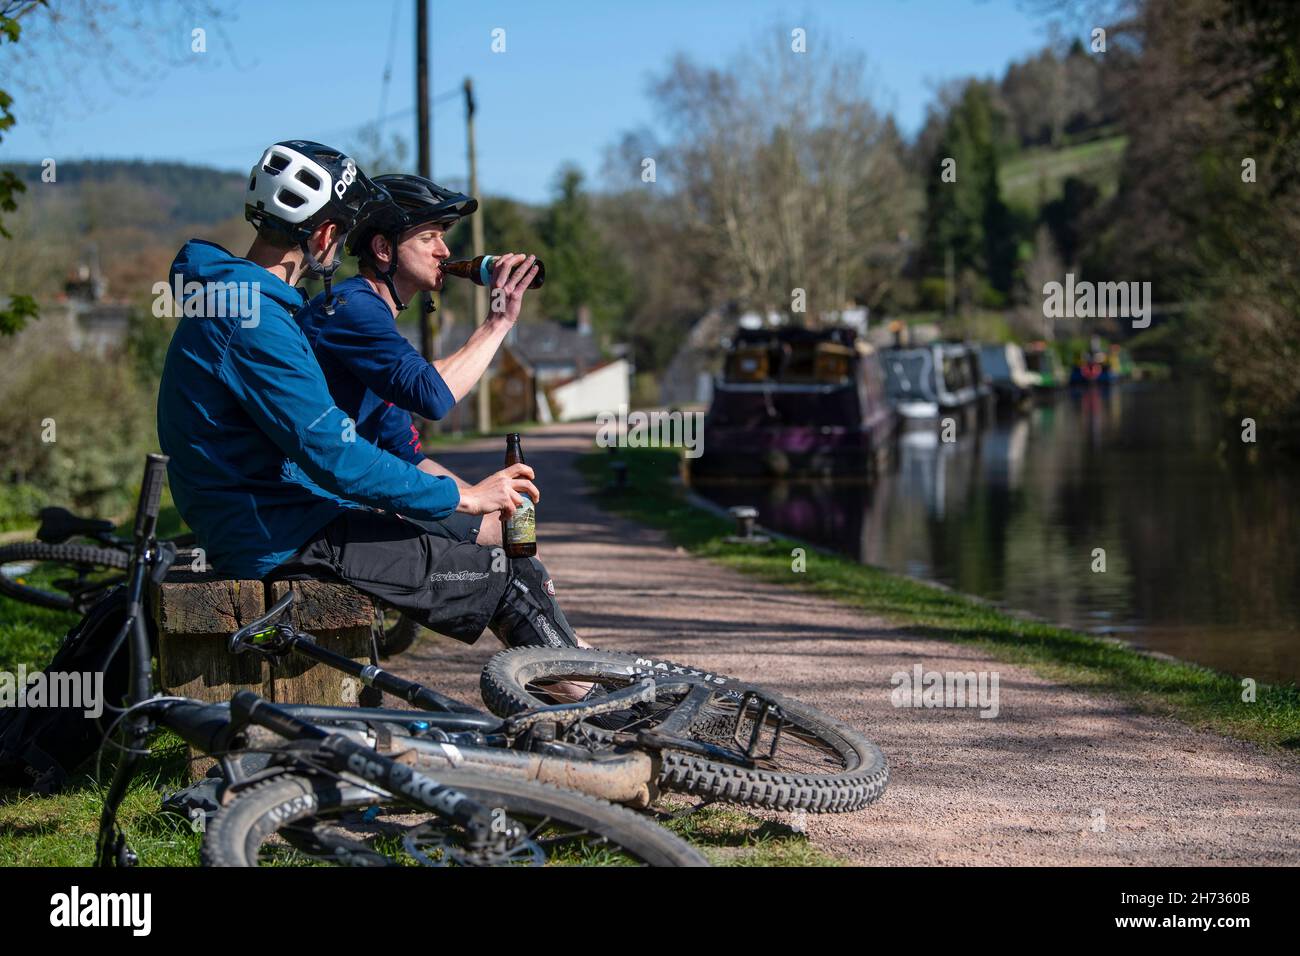 Deux motards de montagne terminent leur balade avec une bière à côté du canal Monbucshire & Brecon, au pays de Galles. Banque D'Images